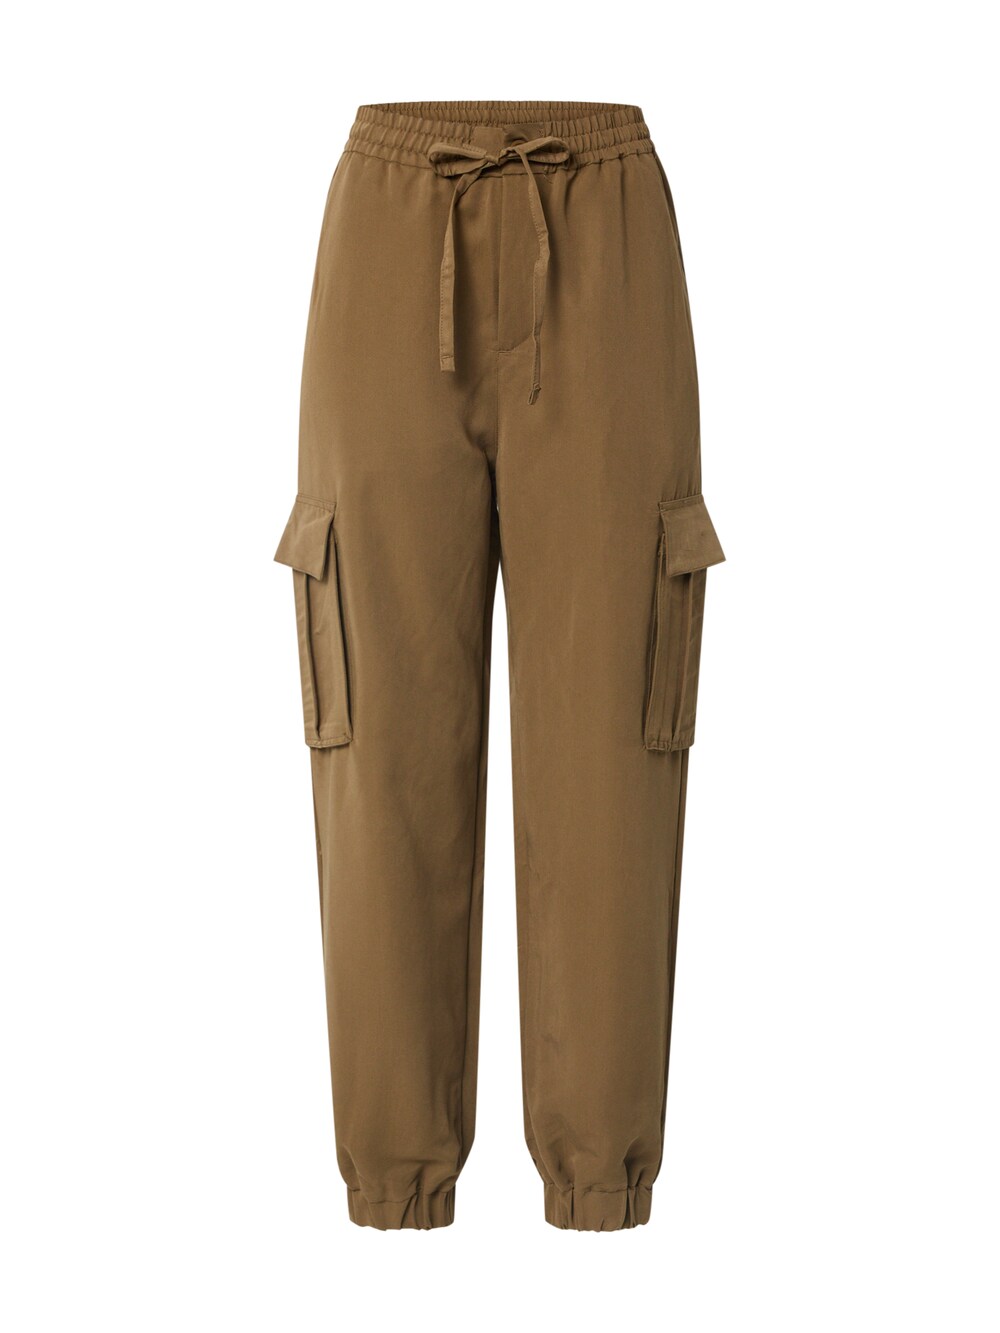 Зауженные брюки-карго Urban Classics, оливковый зауженные брюки карго urban classics оливковое